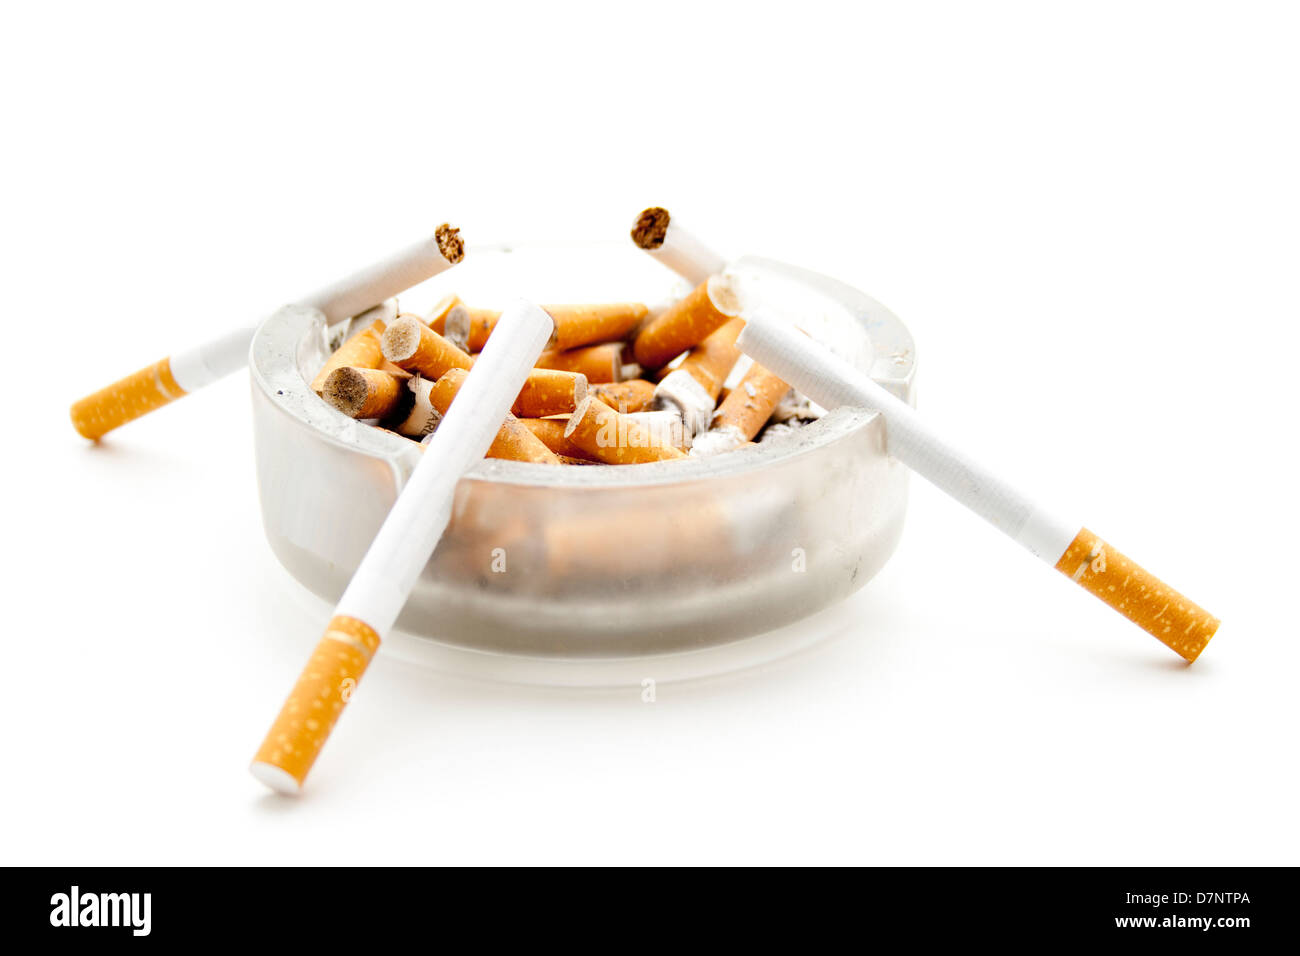 Eine offene Packung Heets-Zigaretten und eine einzelne Zigarette auf einem  Aschenbecher Stockfotografie - Alamy